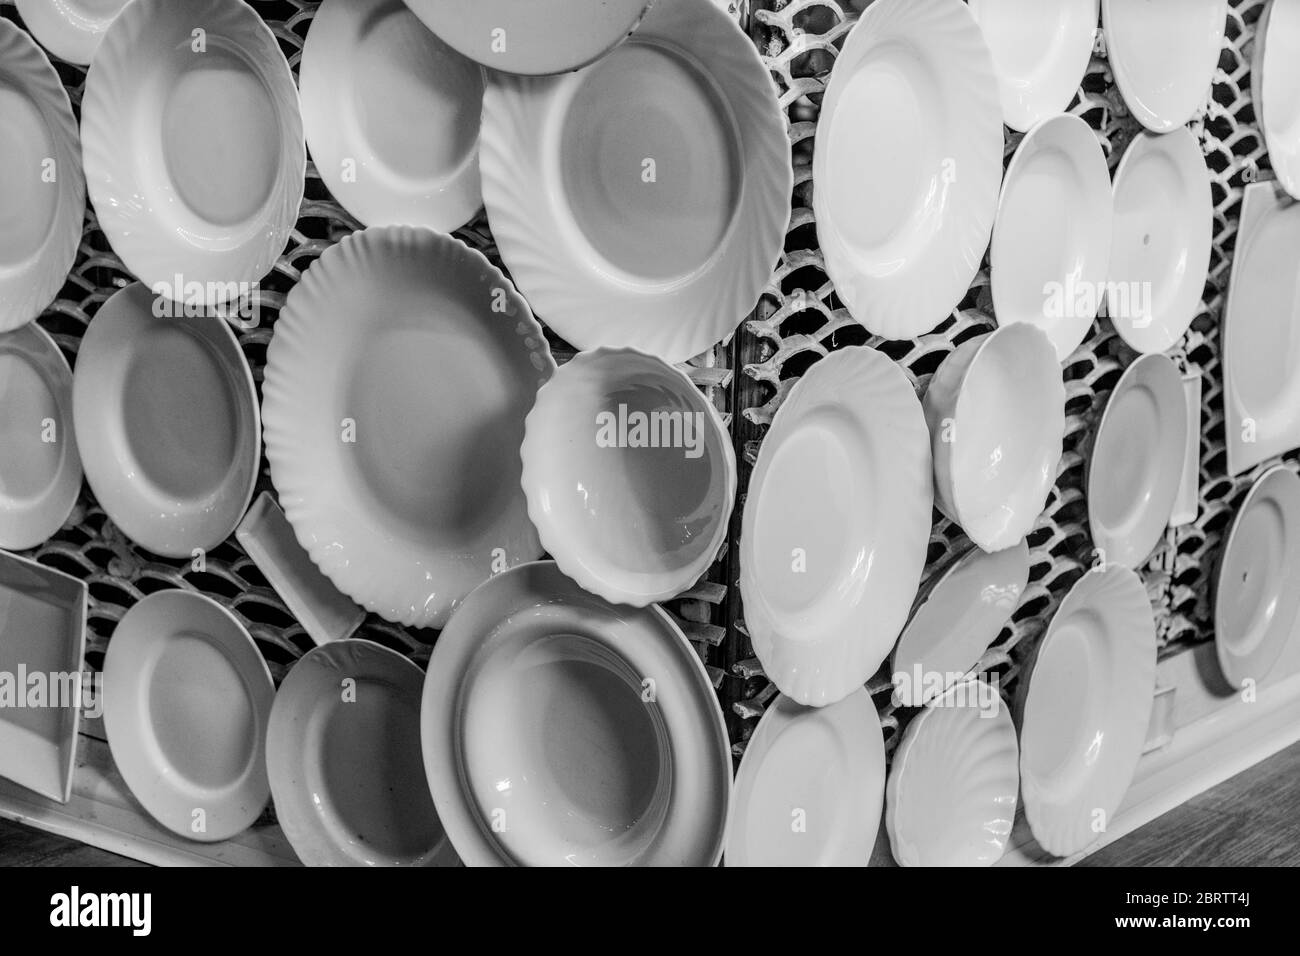 Des photographies en noir et blanc de vaisselle blanche et de plats sont exposées sur le mur blanc en treillis. Vaisselle de différentes tailles Banque D'Images